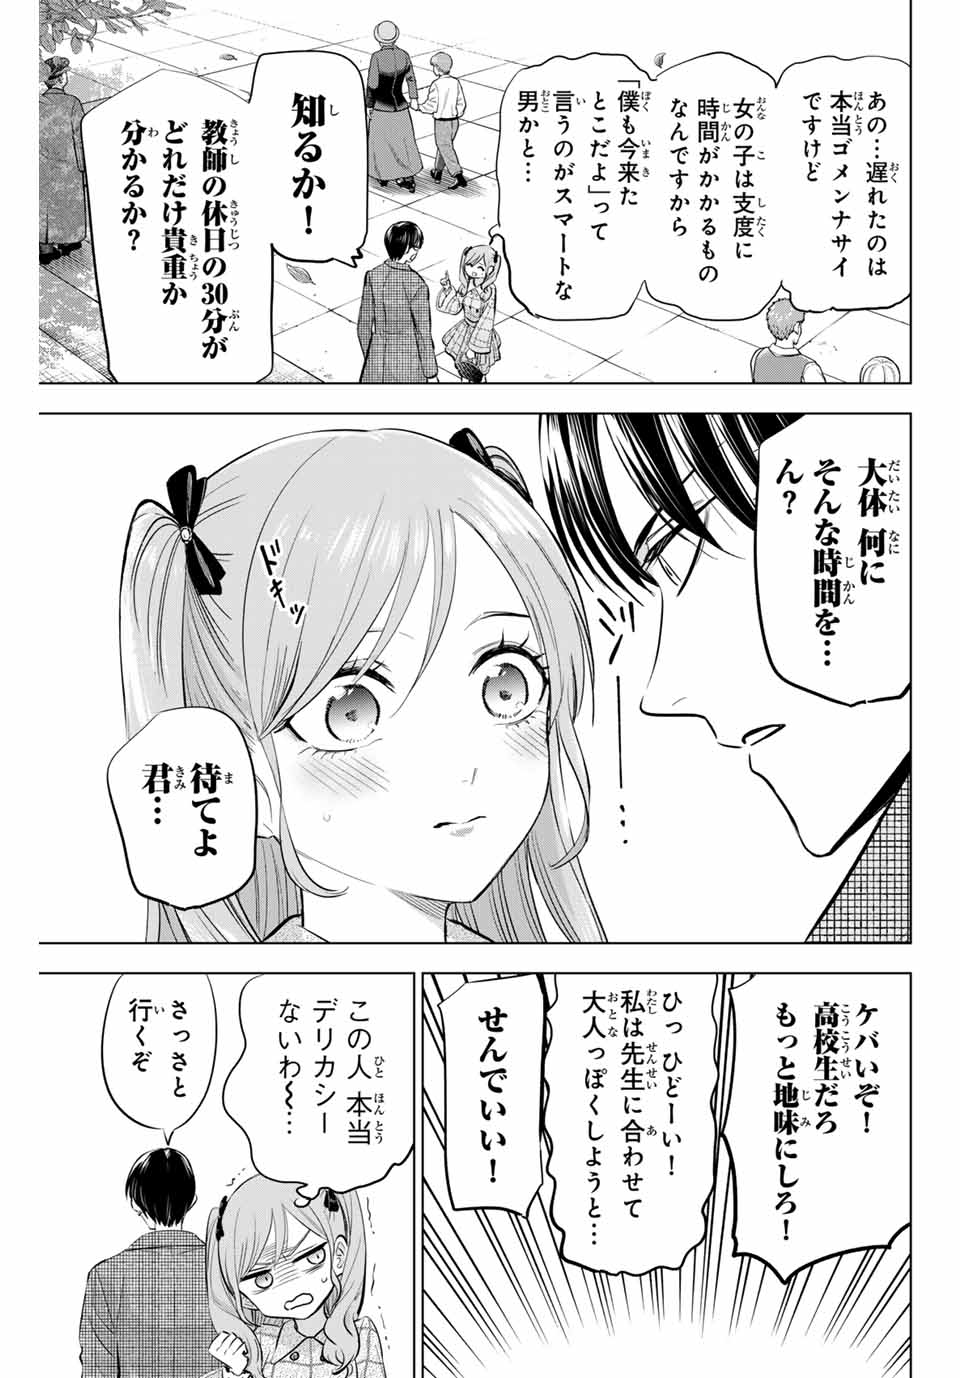 Kuroneko to Majo no Kyoushitsu - Chapter 59 - Page 9